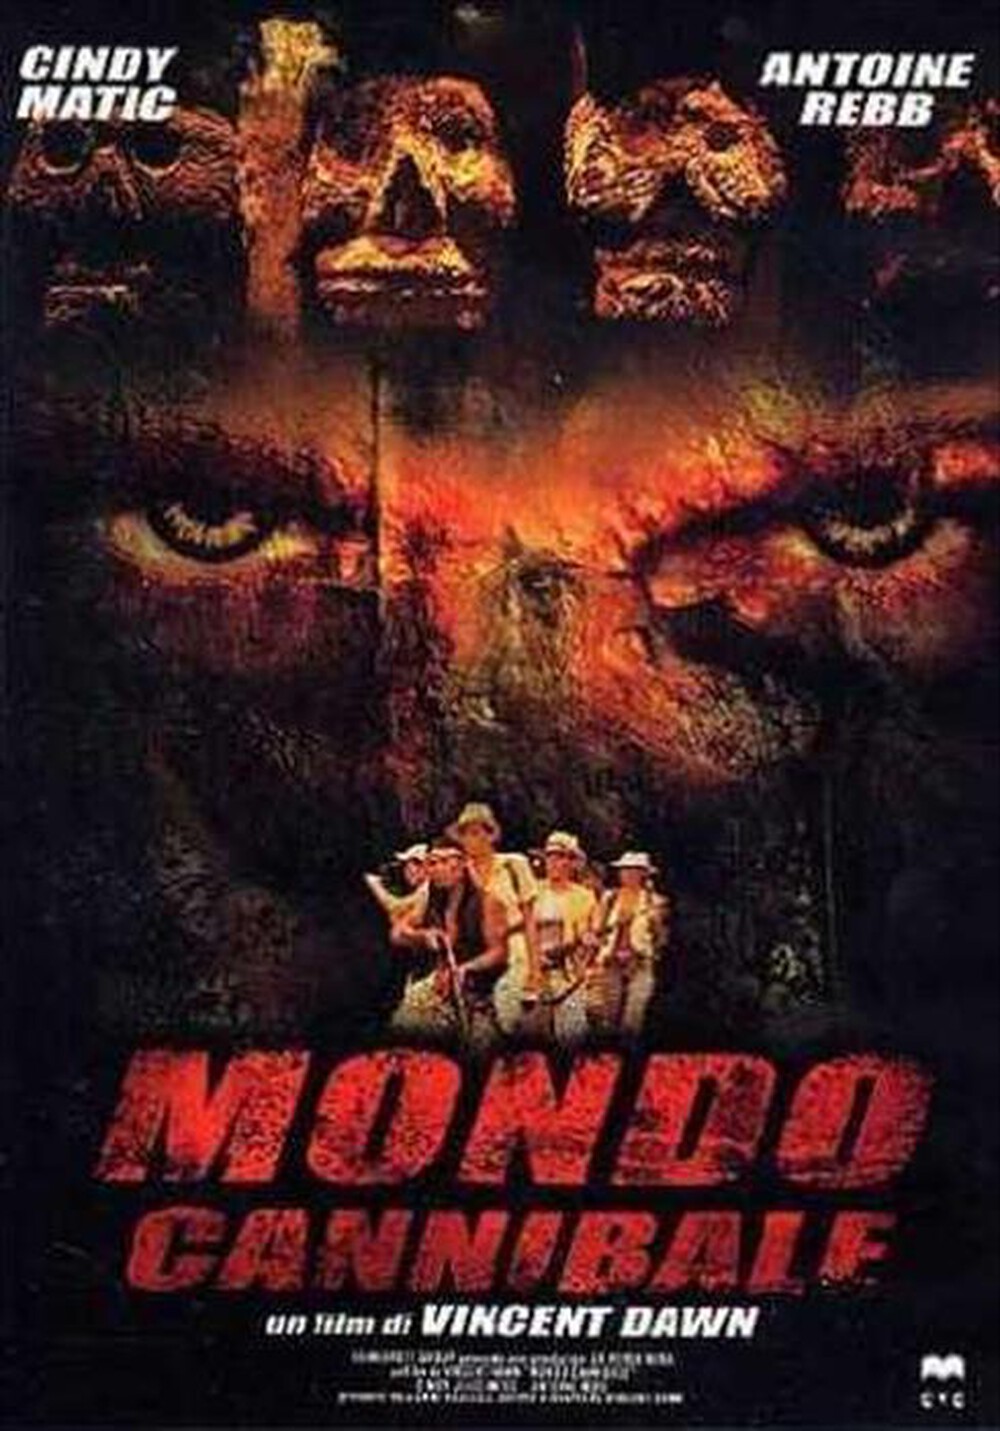 "30 HOLDING - Mondo Cannibale"